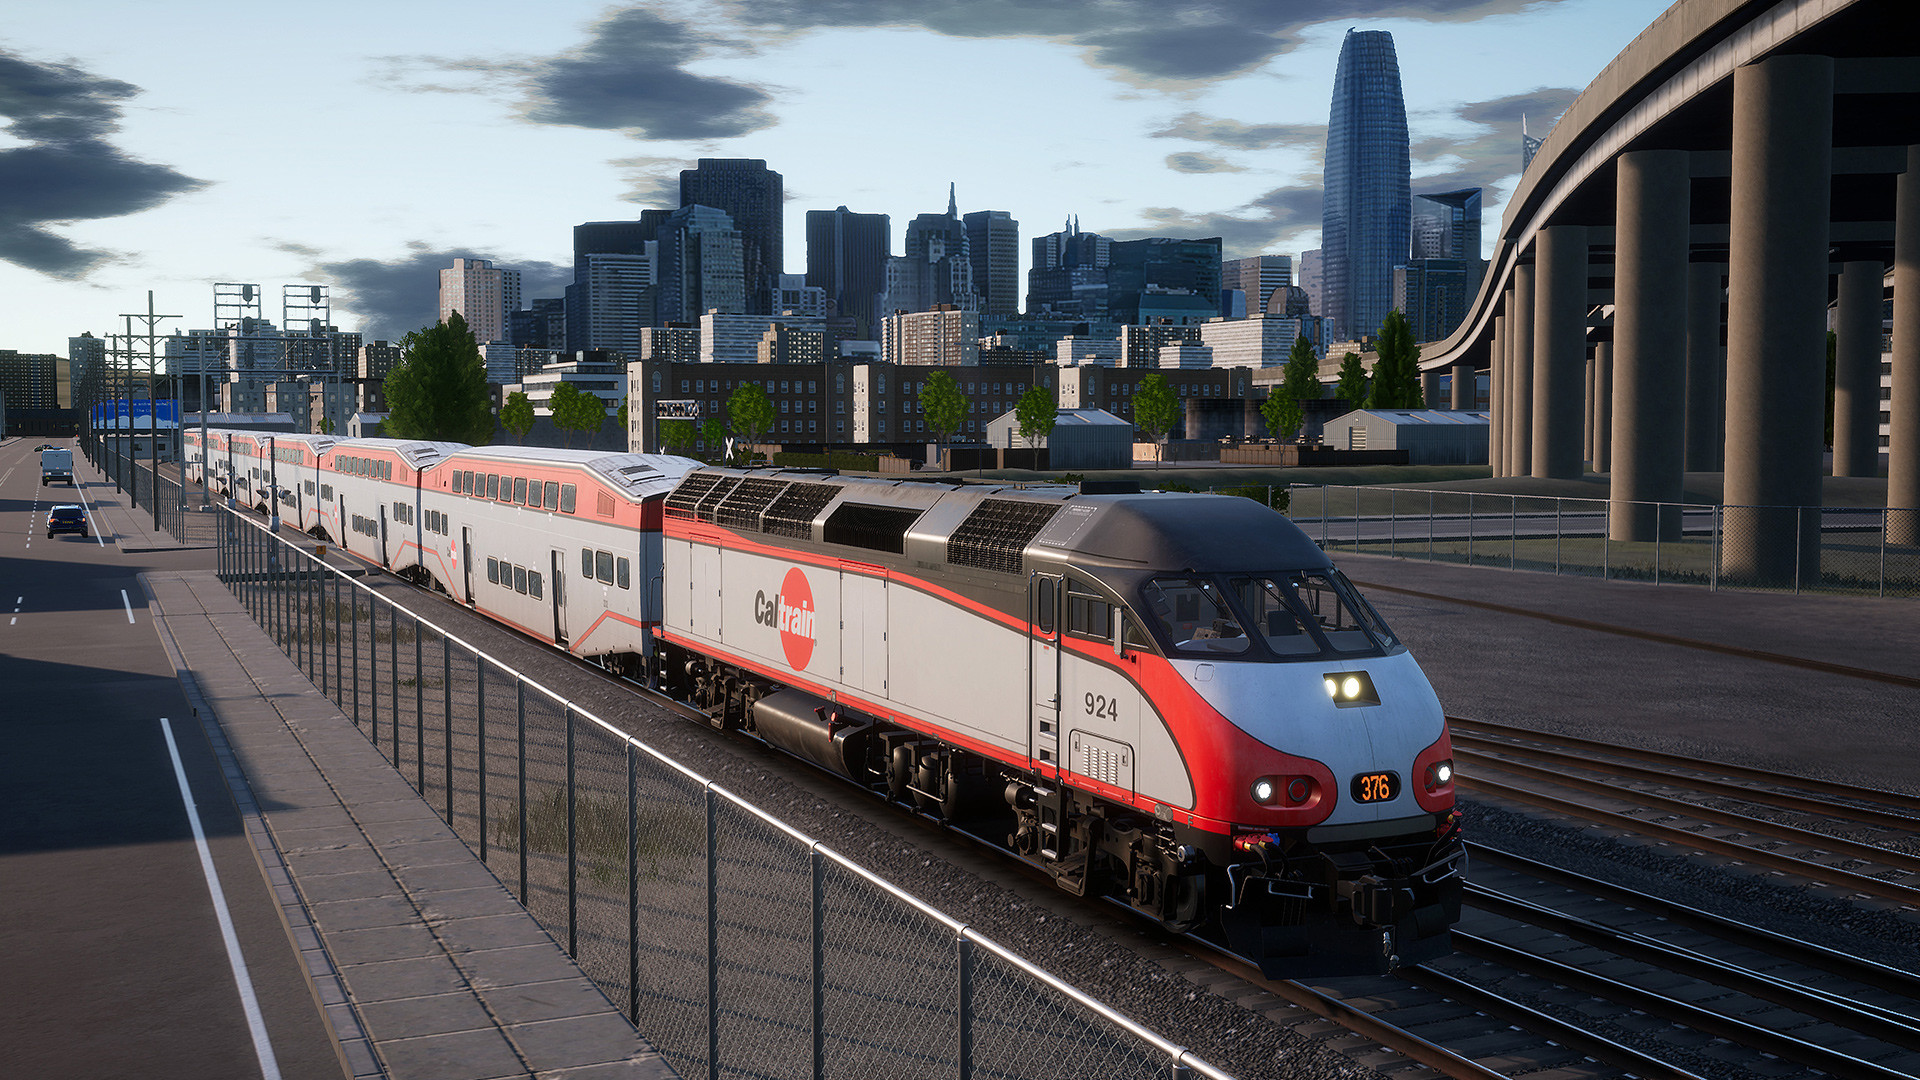 Train Sim World - Caltrain MP36PH-3C Baby Bullet Loco Add-On DLC Steam CD Key 2.42 USD